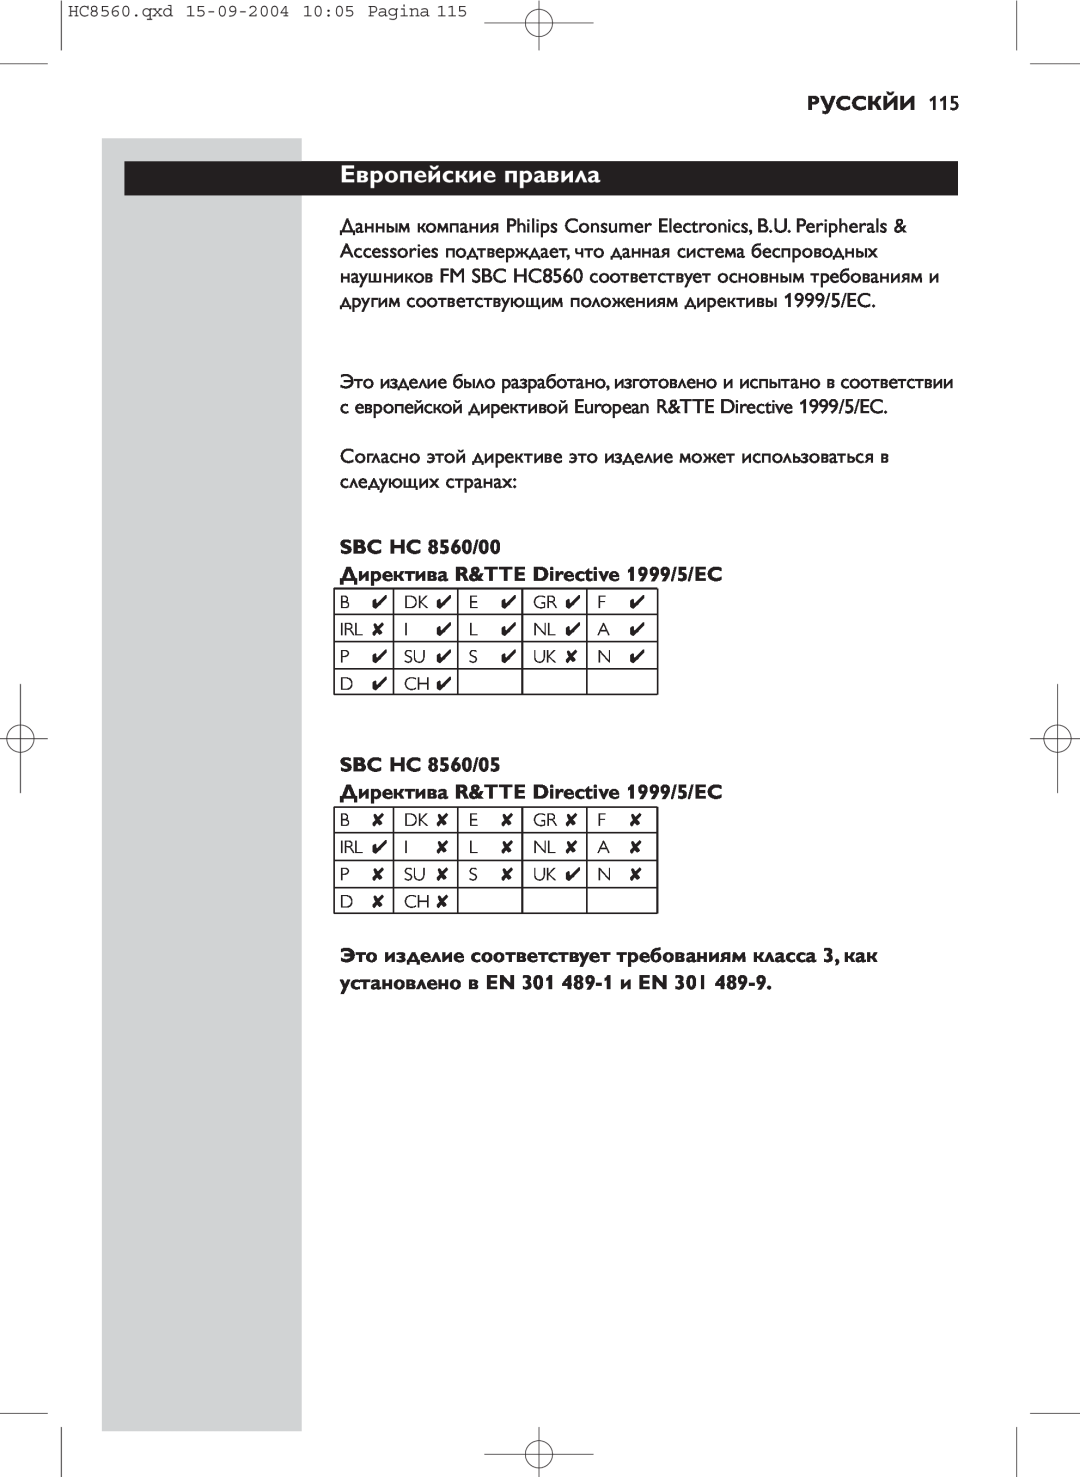 Philips manual Европейские правила, Русскйи, SBC HC 8560/00, Директива R&TTE Directive 1999/5/EC, SBC HC 8560/05 